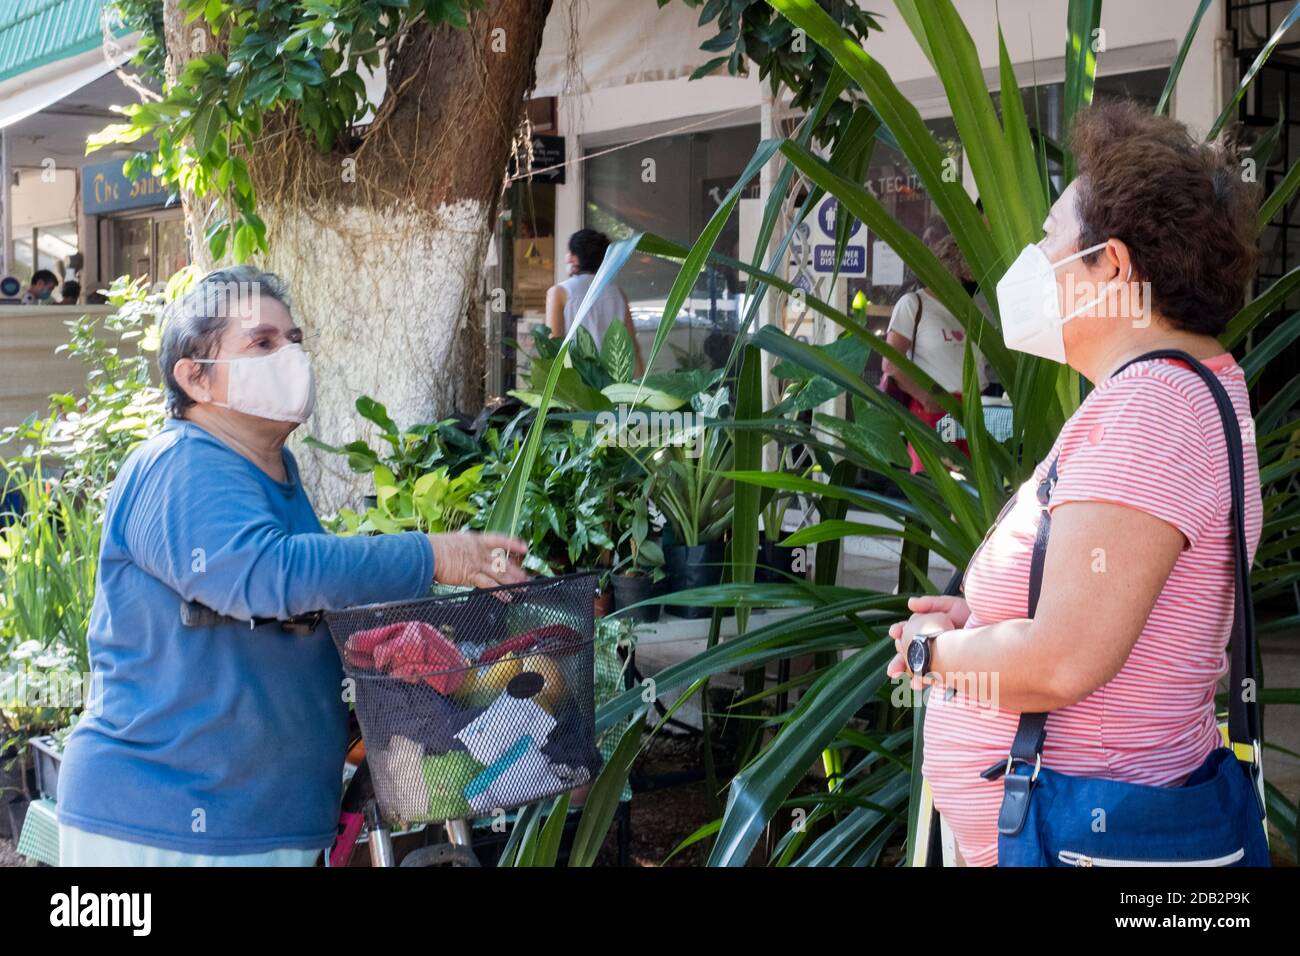 Mexikanische Frauen mit Gesichtsmasken, Covid Pandemie, Meruda, Yucatan, Mexiko Stockfoto